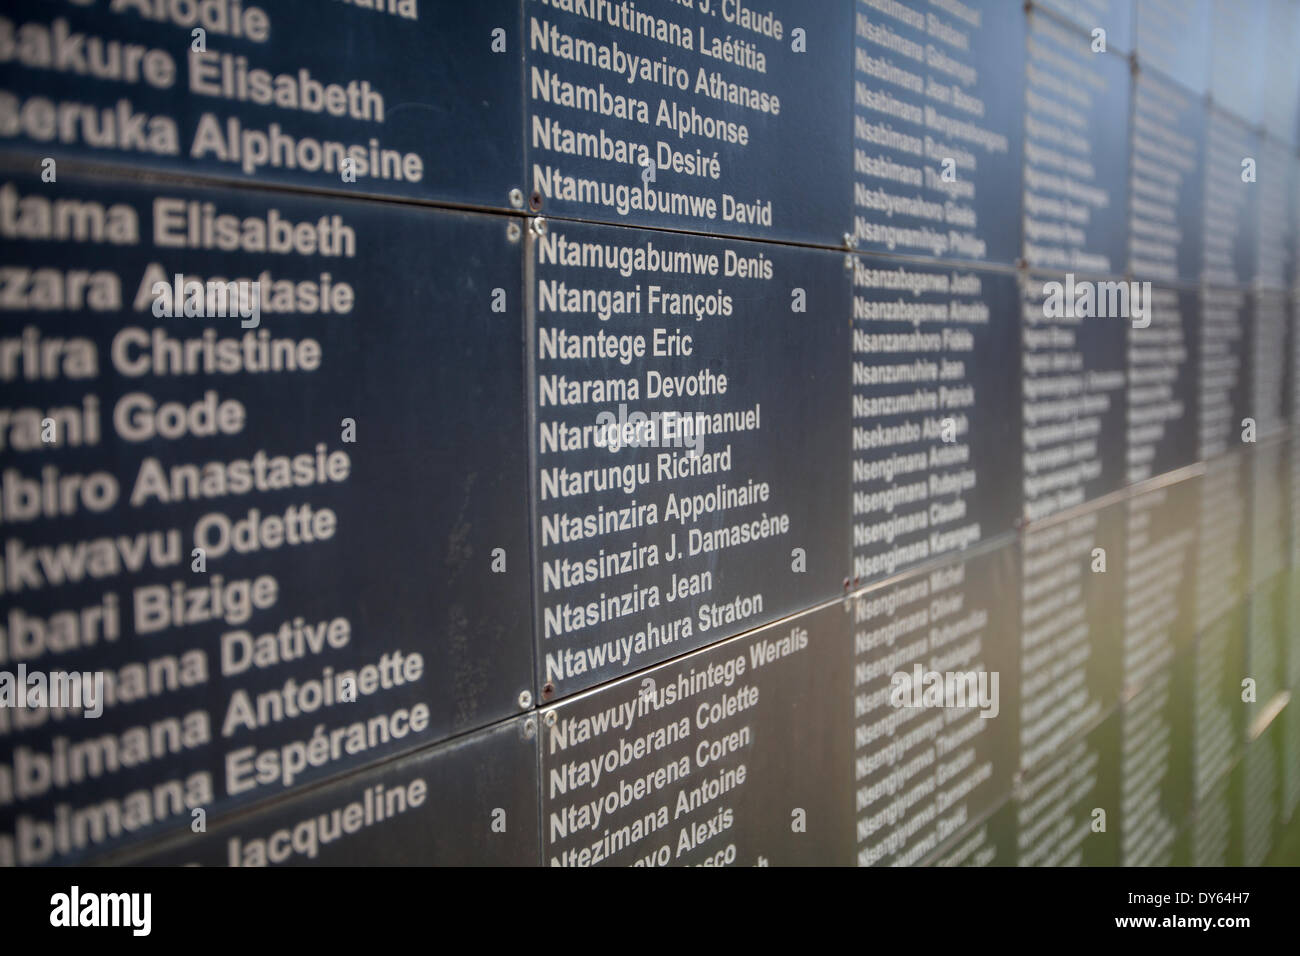 A Kigali, Ruanda. Il 6 aprile 2014. Una parete di ricordo al di fuori del Kigali Genocide Memorial Centre con alcuni dei nomi di persone uccise presso il sito durante il genocidio contro i tutsi. Questa settimana segna il ventesimo anniversario del genocidio. Durante i circa 100-giorno periodo dal 7 aprile 1994 fino a metà luglio, un importo stimato di 500.000 1.000.000 ruandesi sono stati uccisi, costituente tanto quanto il 20% della popolazione totale del paese e 70% dei Tutsi allora viventi in Ruanda. Foto Stock